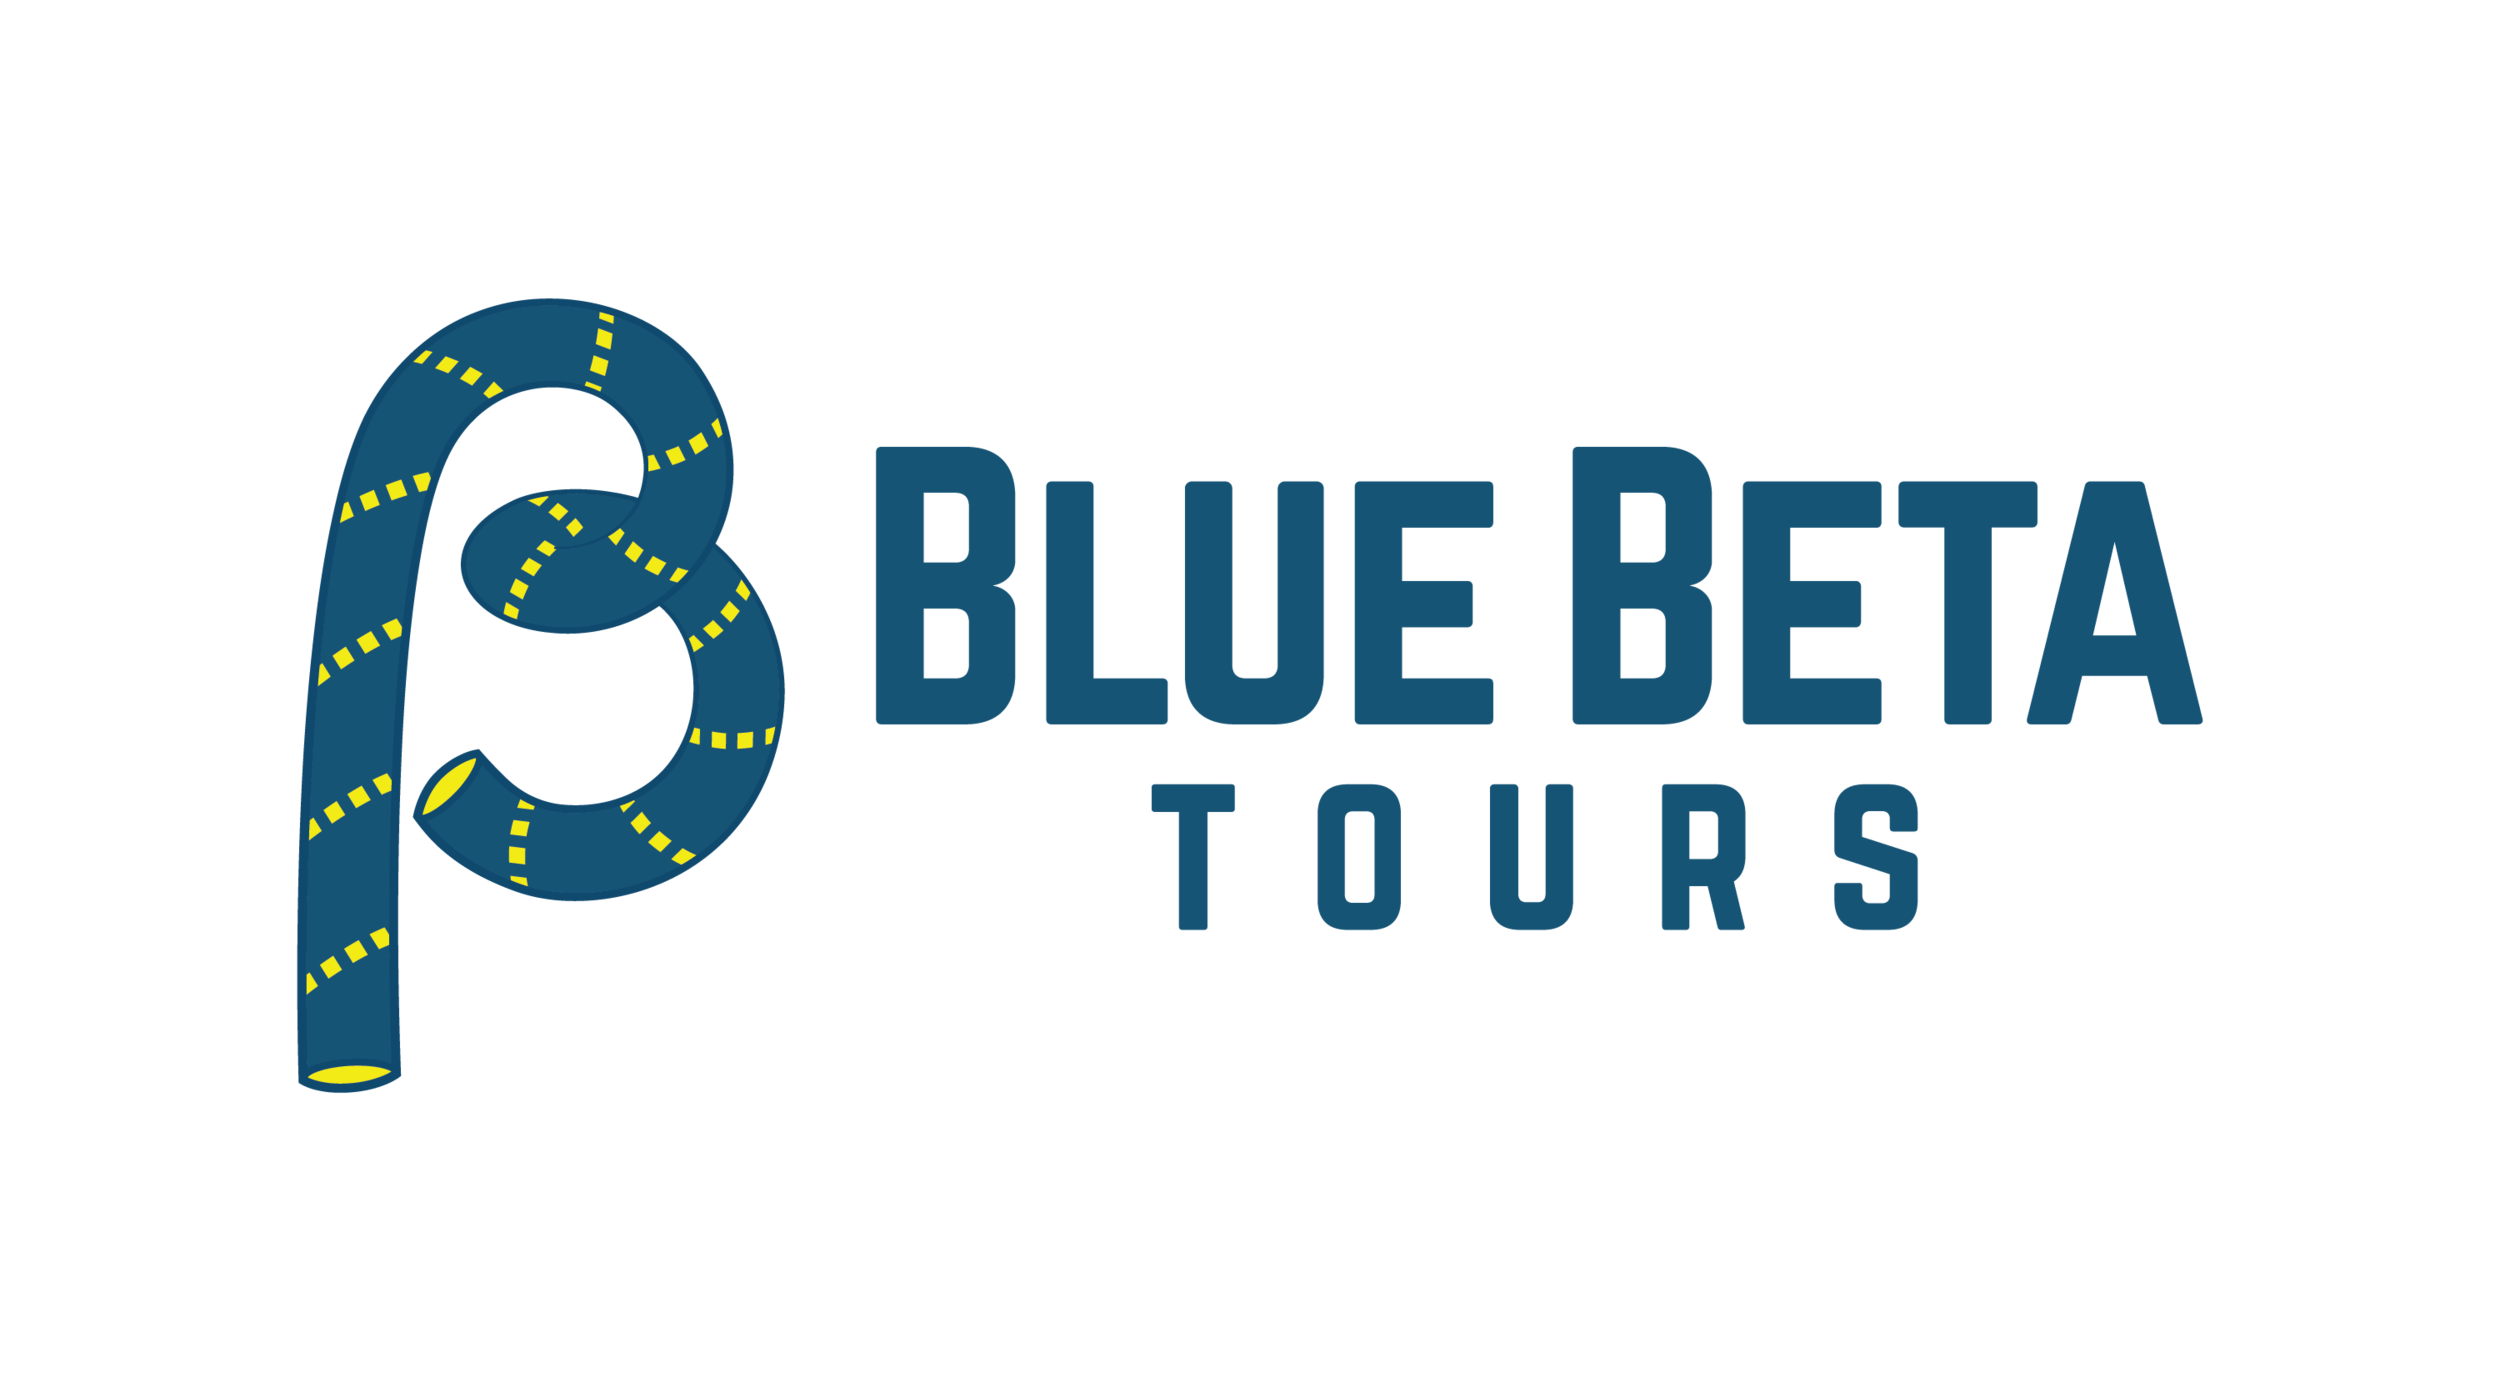 Blue Beta Tours